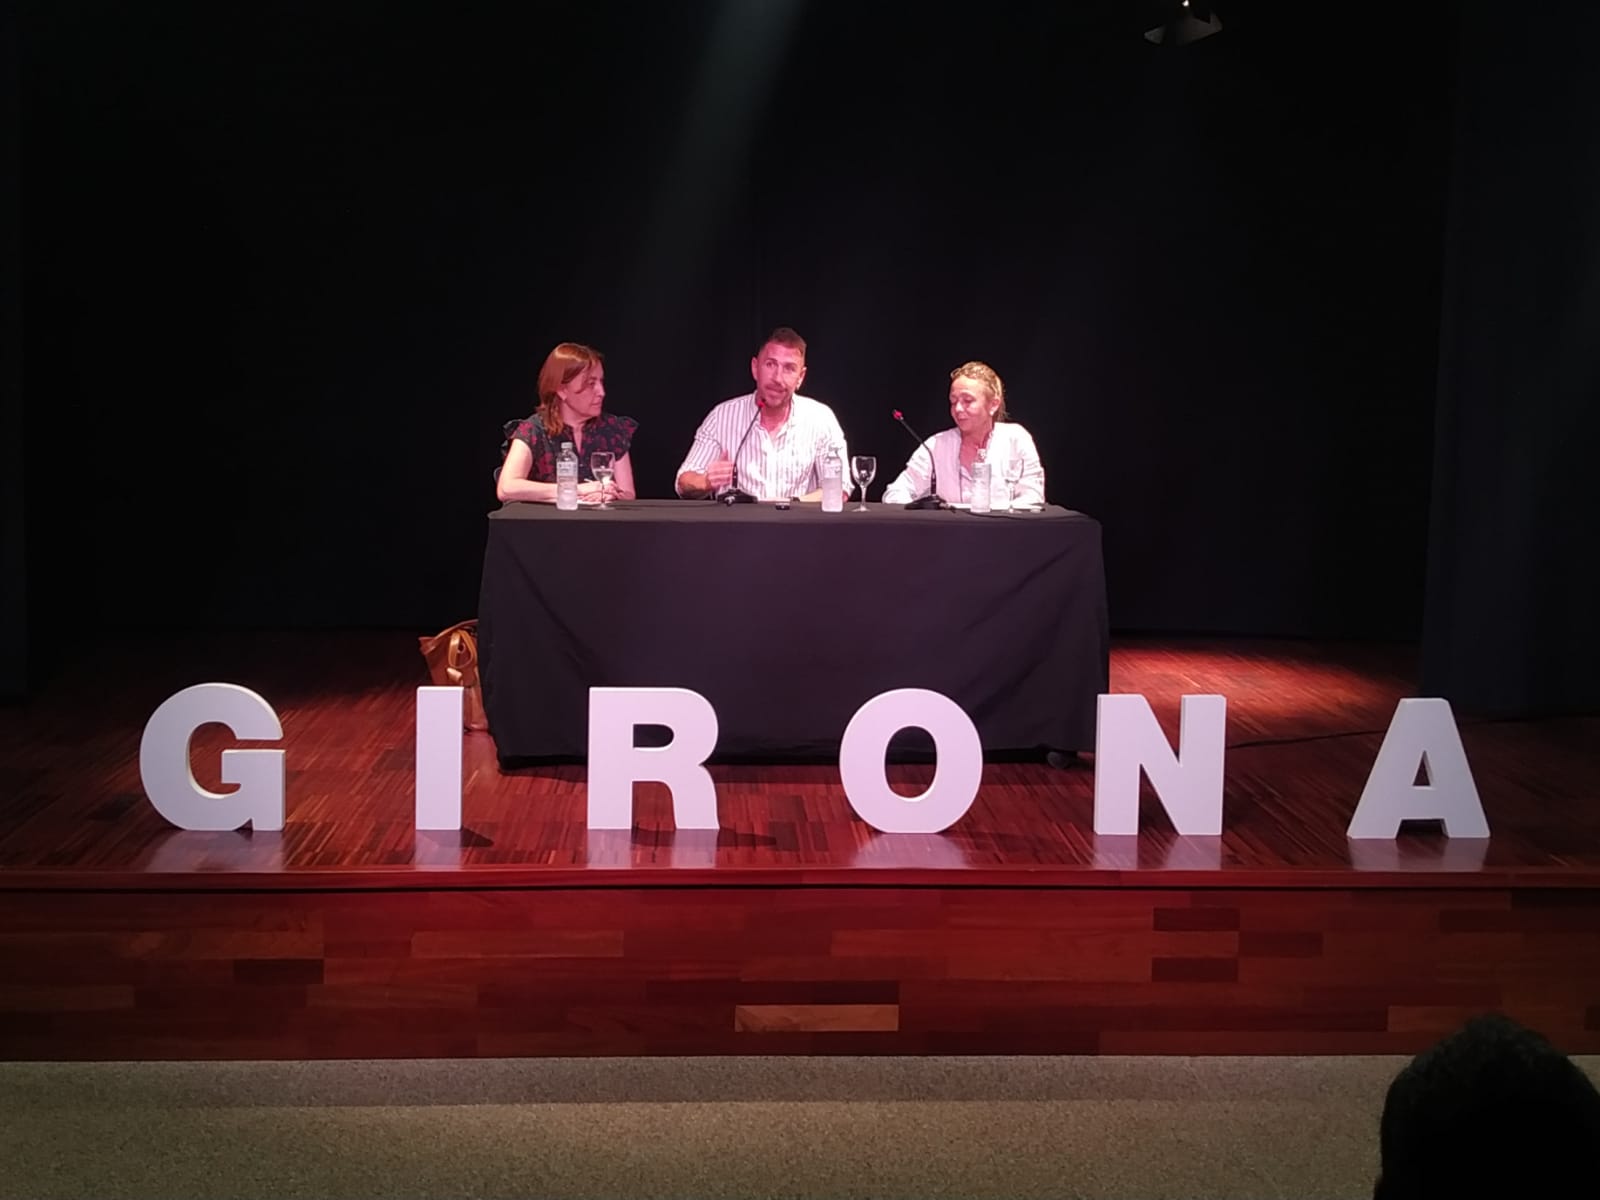 Sílvia Paneque: “Girona ha de modernitzar, actualitzar i ampliar els equipaments i serveis esportius”